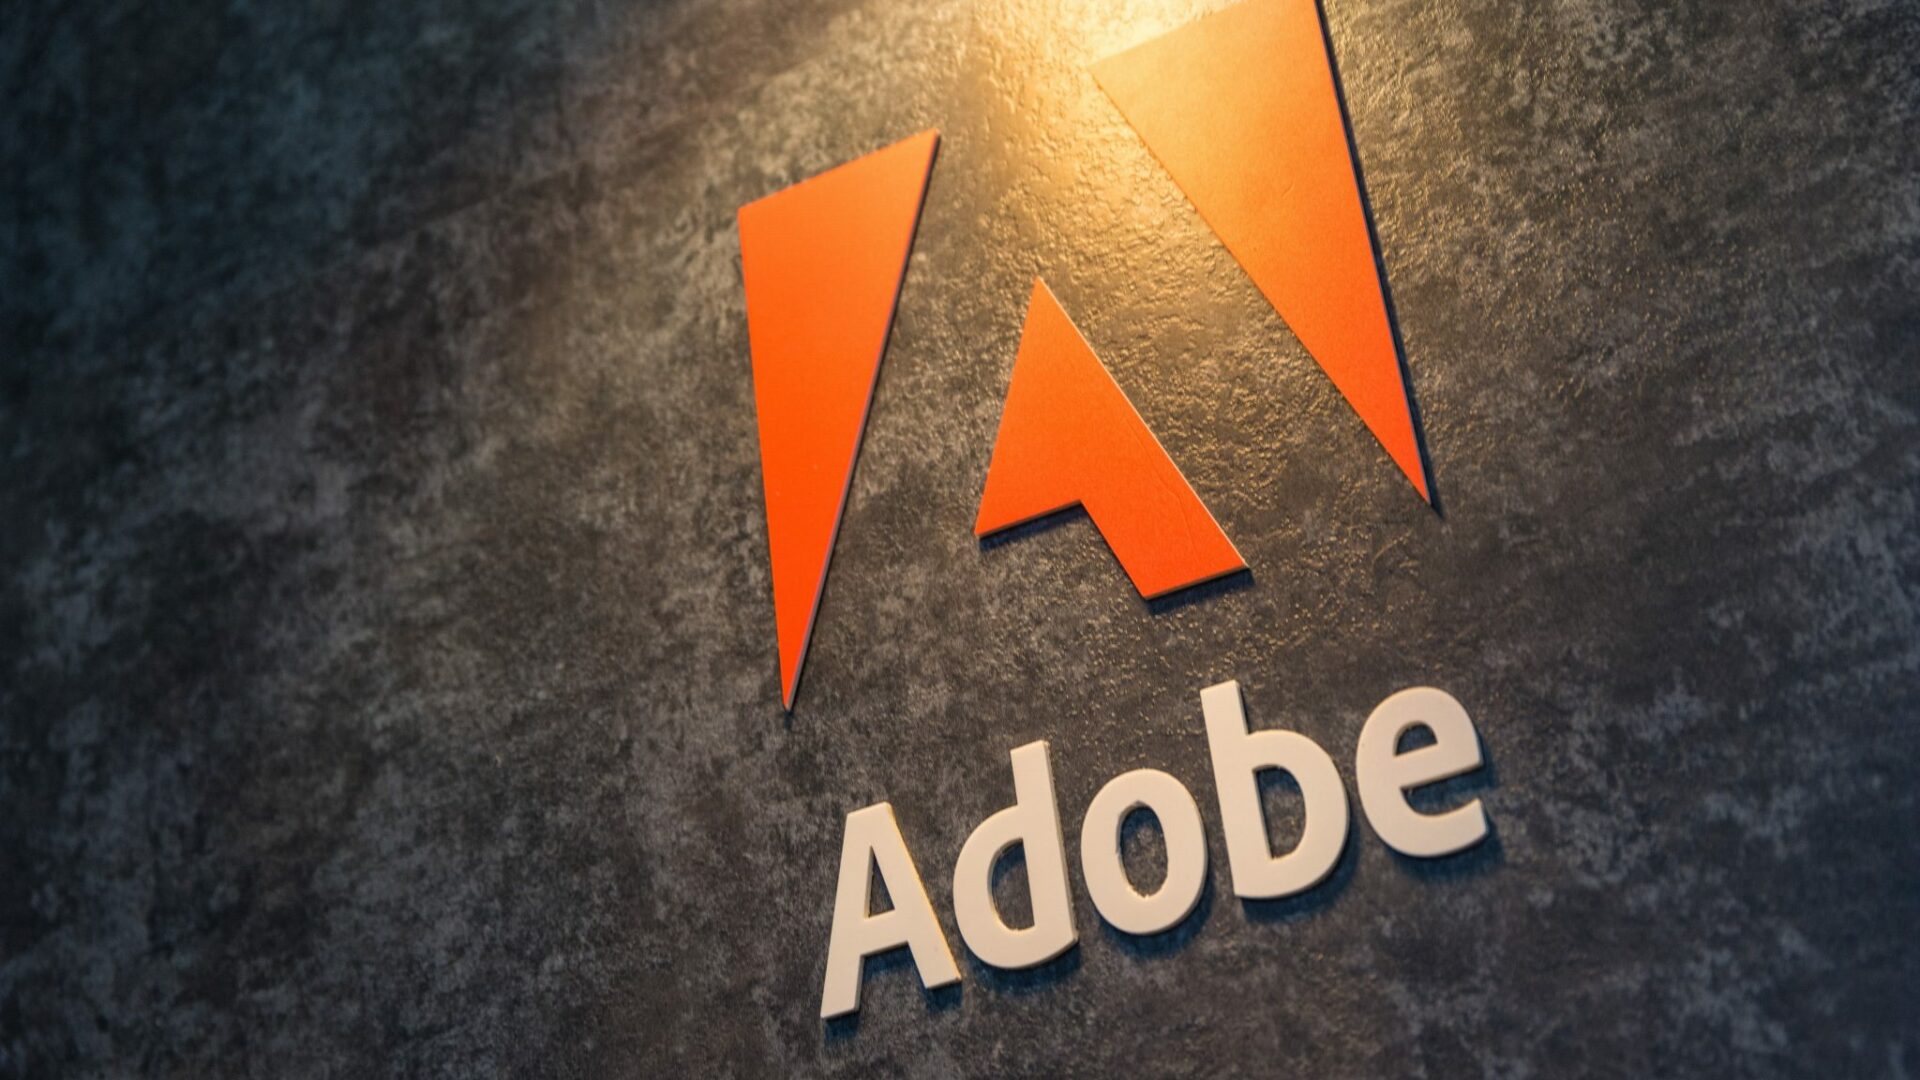 Adobe Document Cloud cresce 32% e atinge receita de US$ 1,97 bi em 2021 - IT Forum